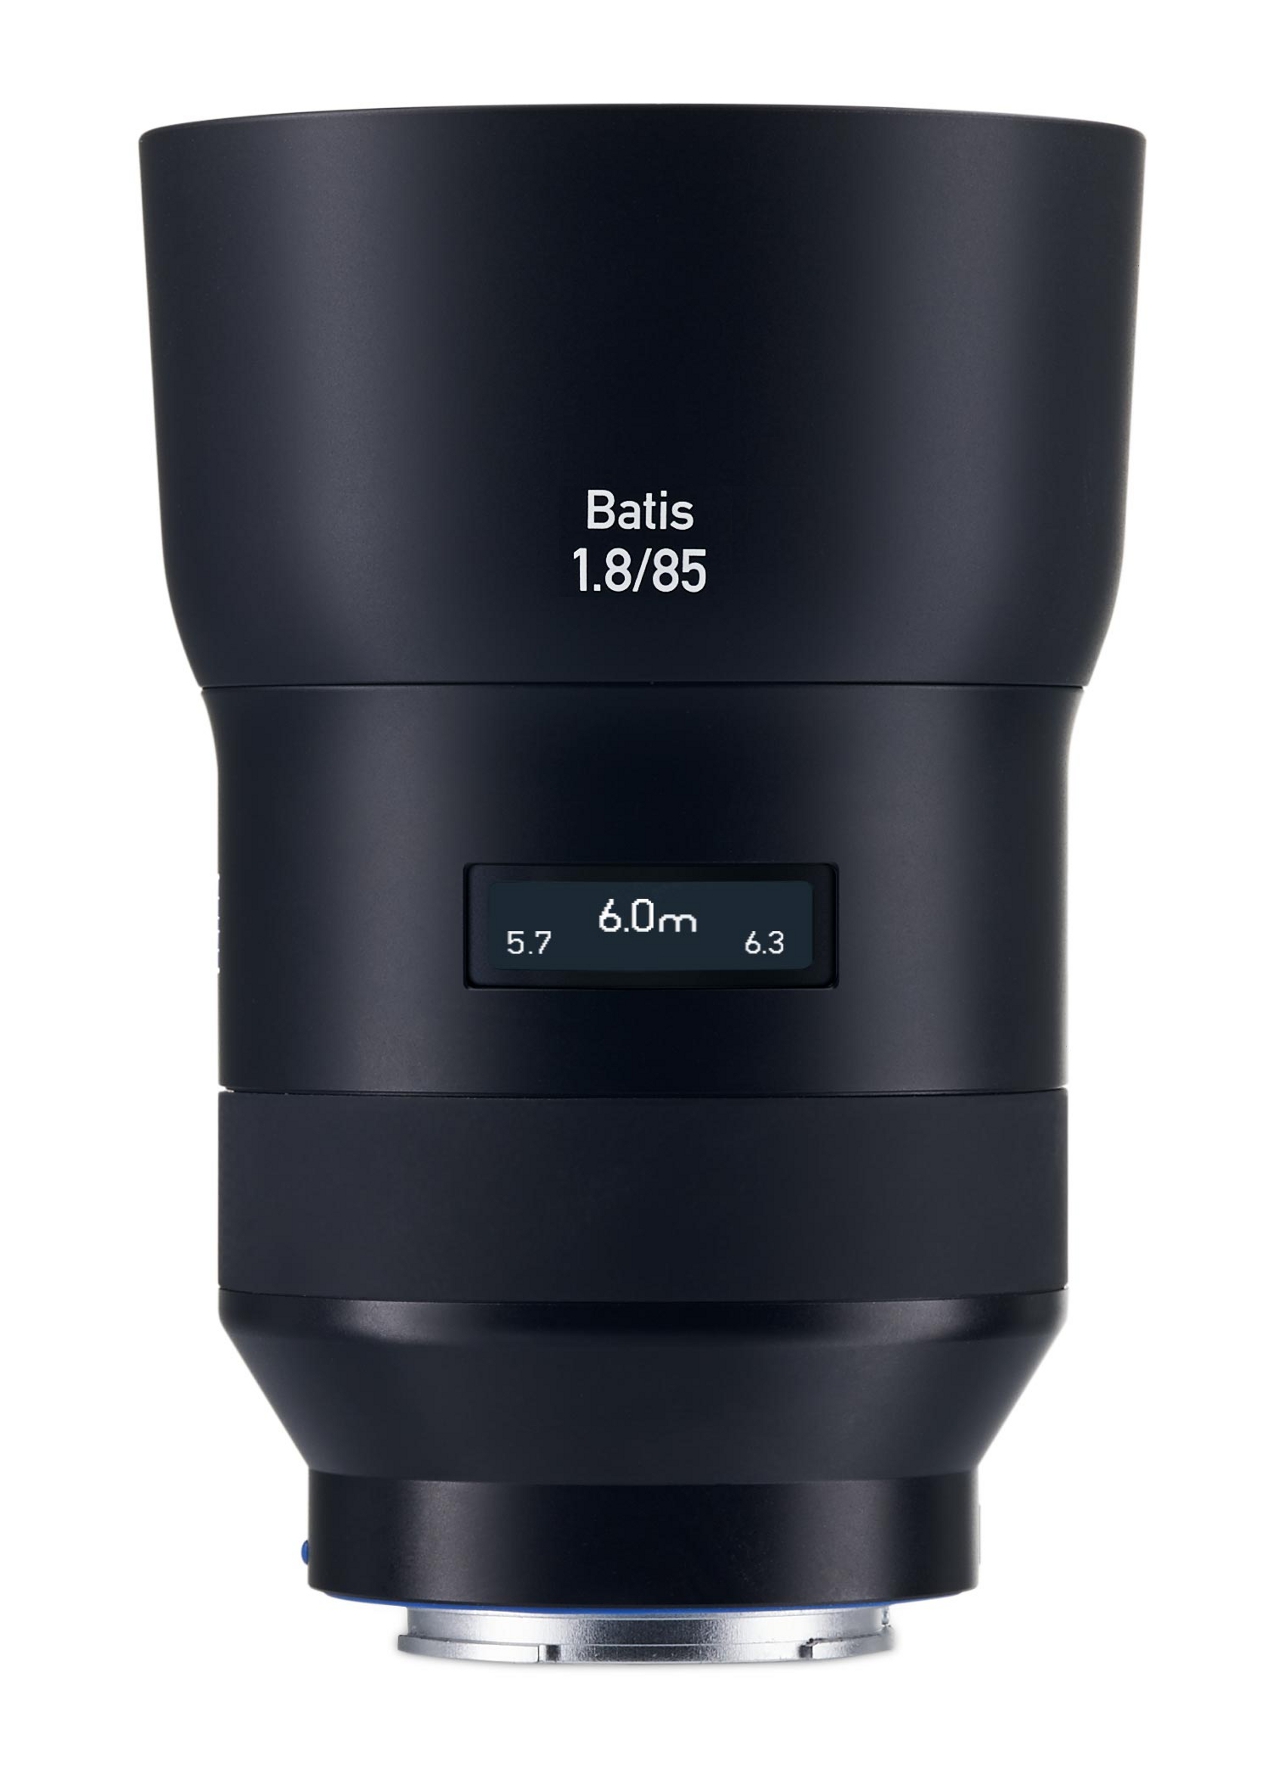 ZEISS Batis 1.8/85 | Fullframe autofocus lens for Sony α series